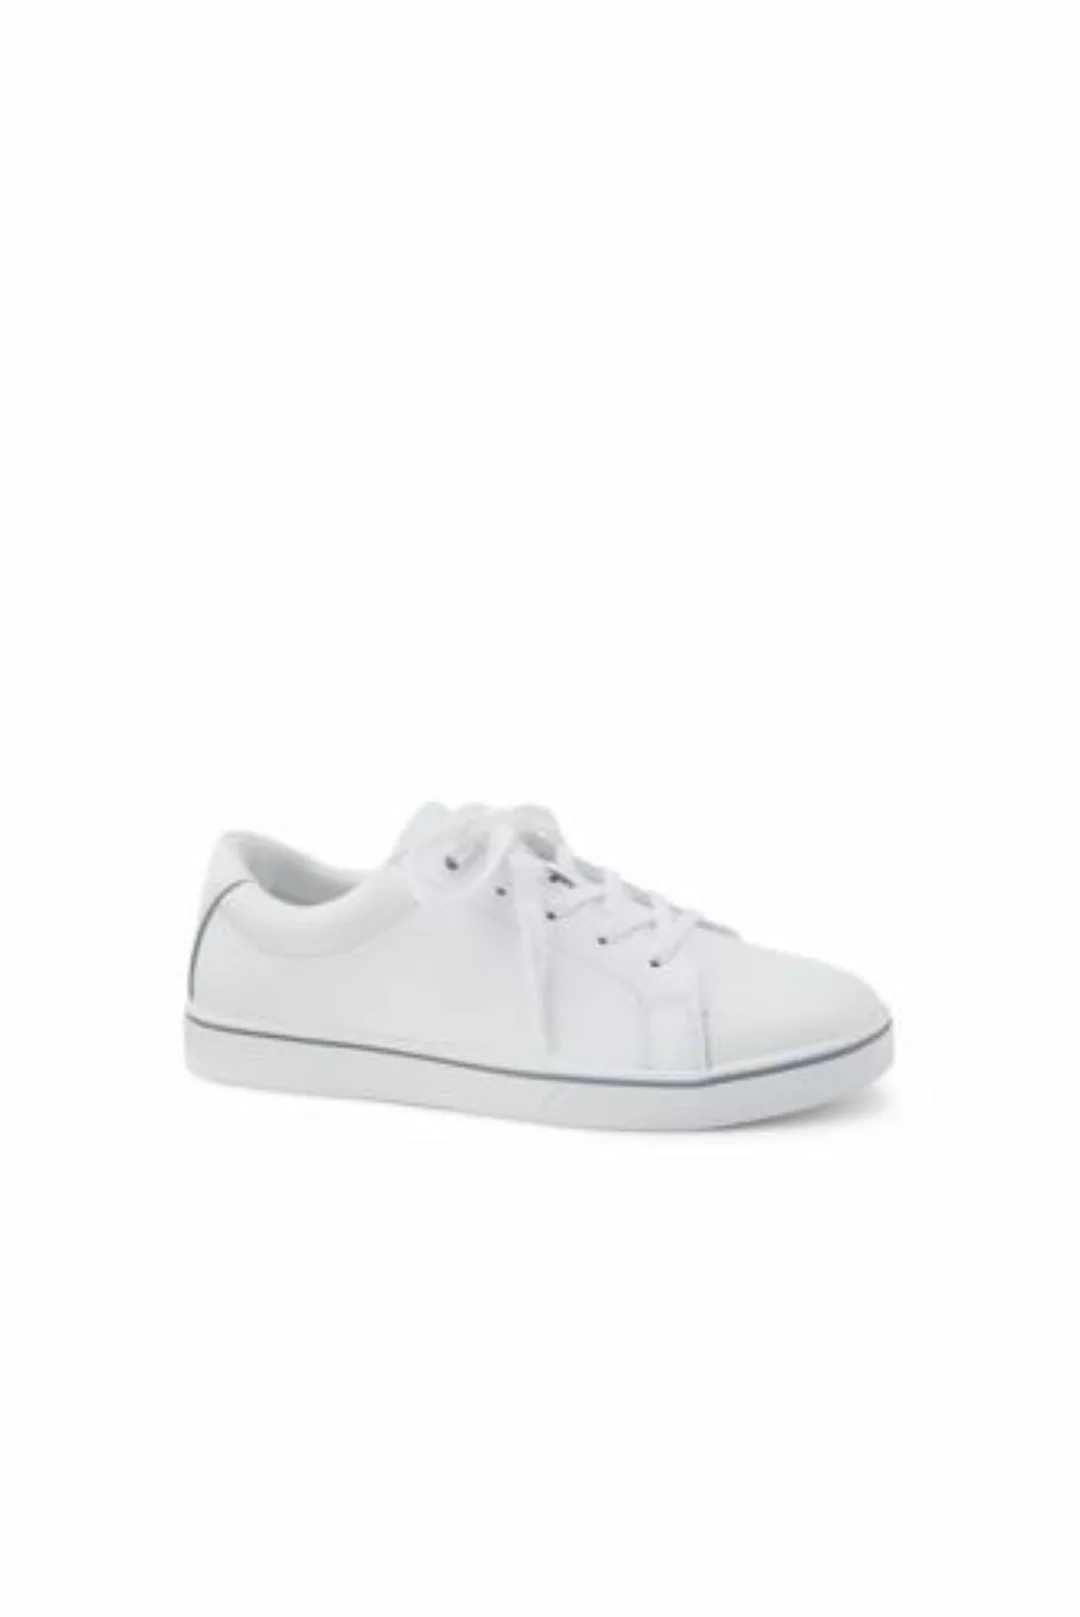 Sneaker, Damen, Größe: 41.5 Normal, Weiß, Leder, by Lands' End, Weiß Leder günstig online kaufen